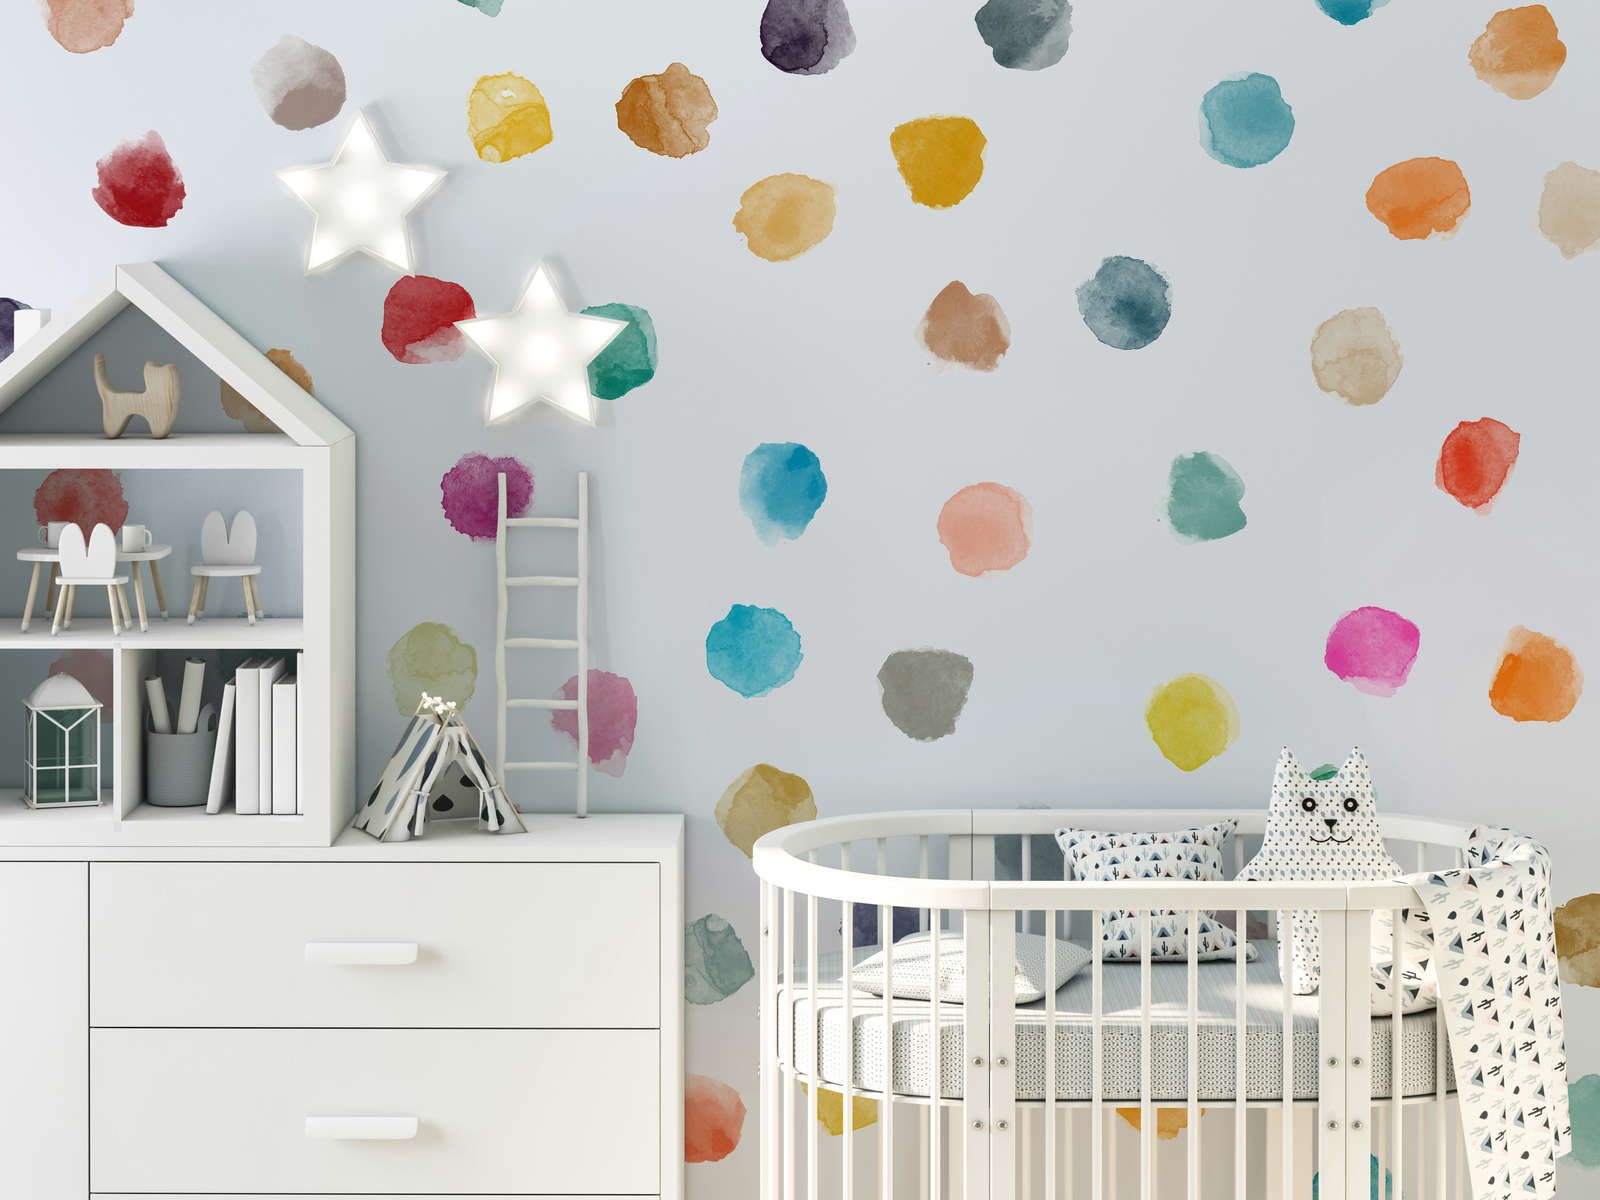             Kinderkamer muurschildering met kleurrijke stippen - Glad & licht glanzend vlies
        